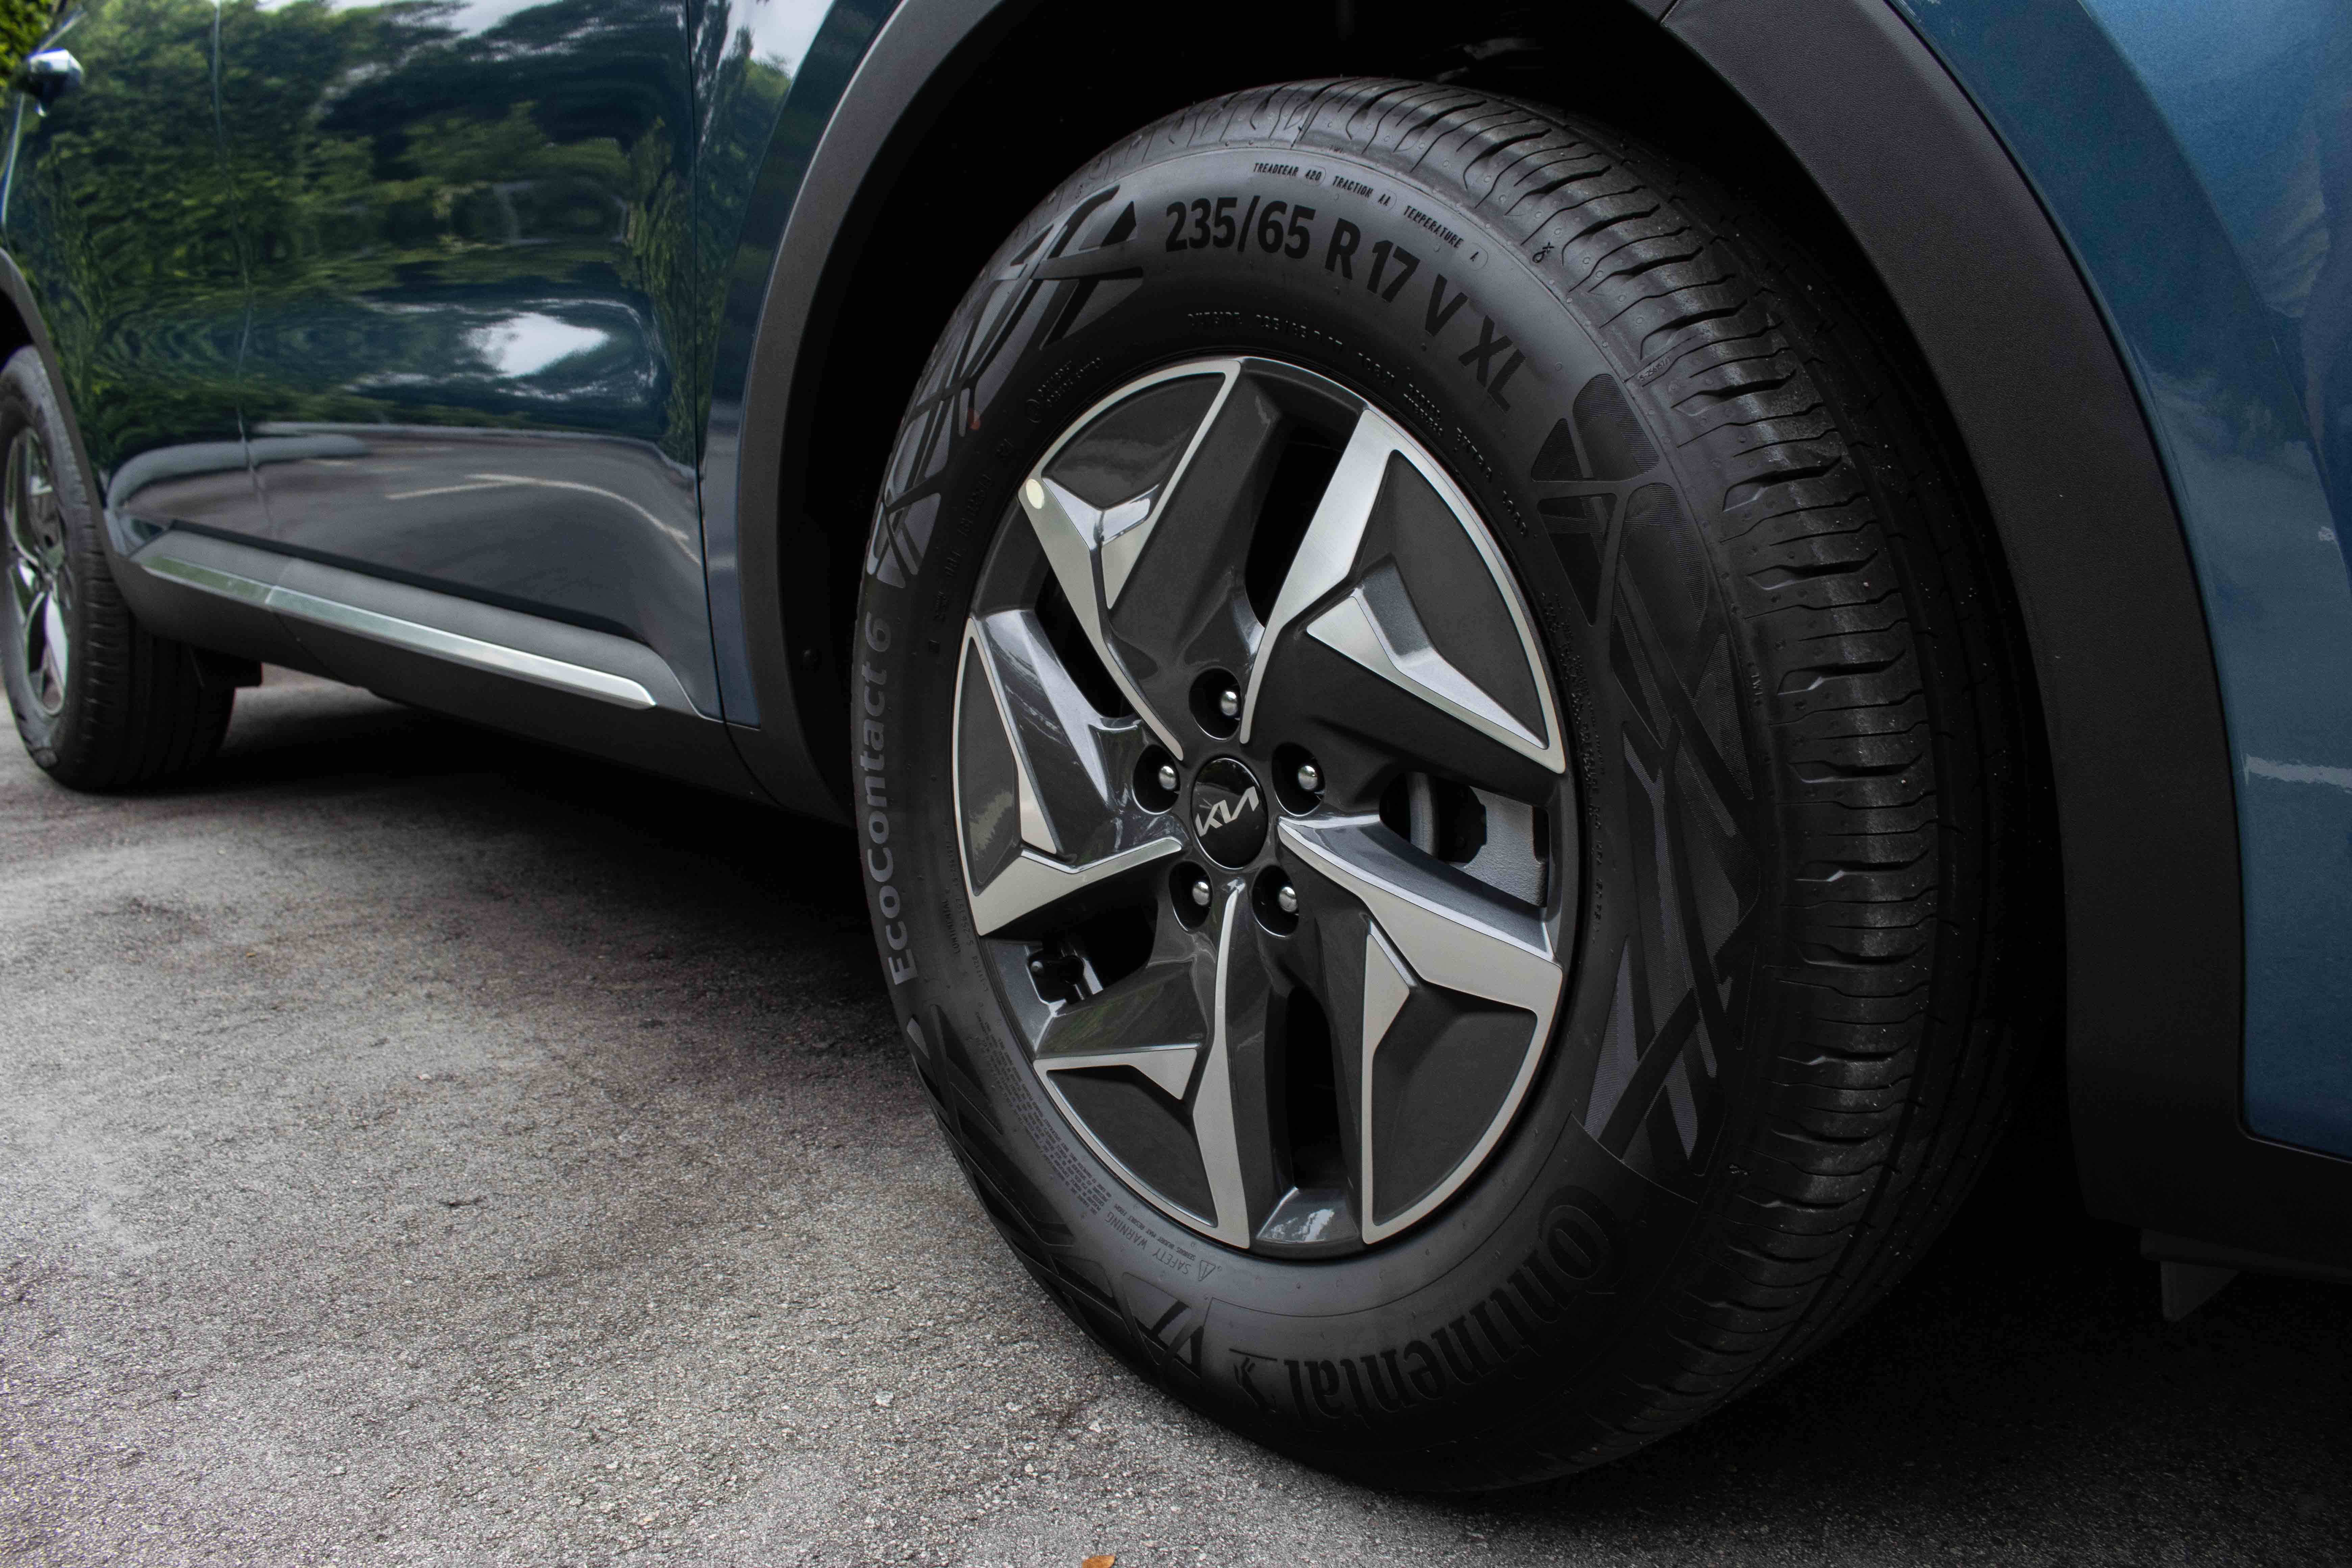 2022 KIA Sorento Hybrid 1.6 T SX Tech Singapore - 17-inch wheels with 236/65 tyres